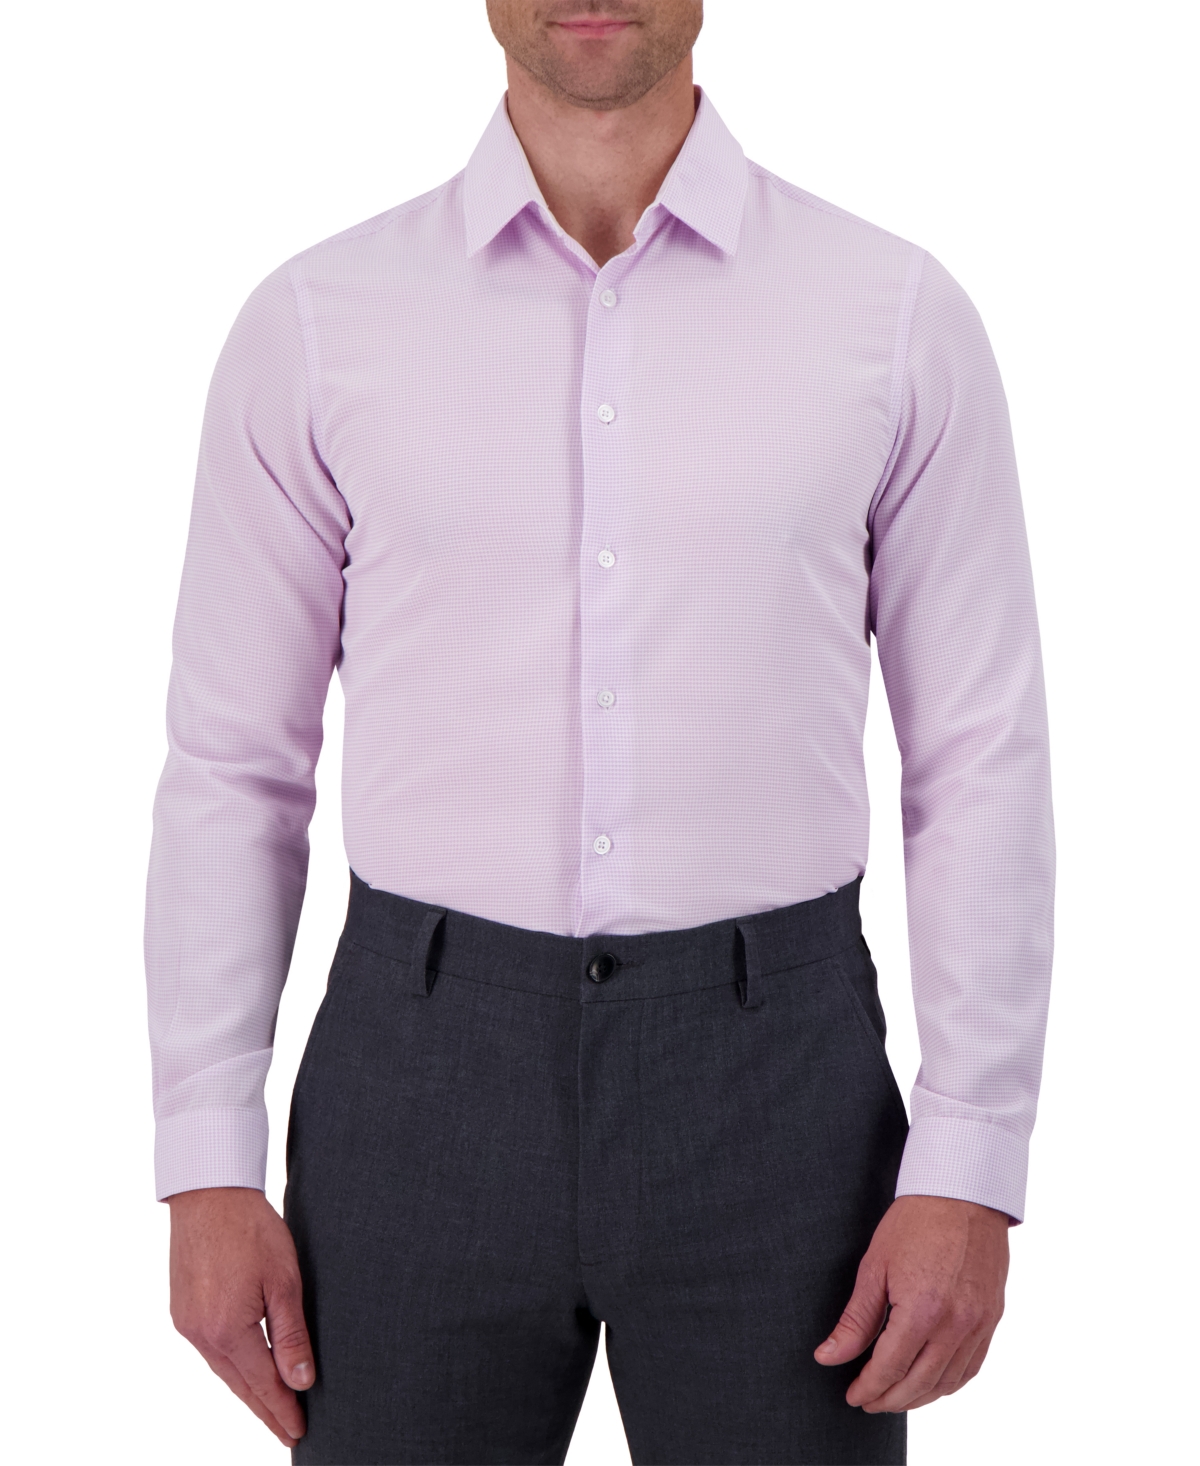 Men's Slim-Fit Houndstooth Print Dress Shirt - Lavender